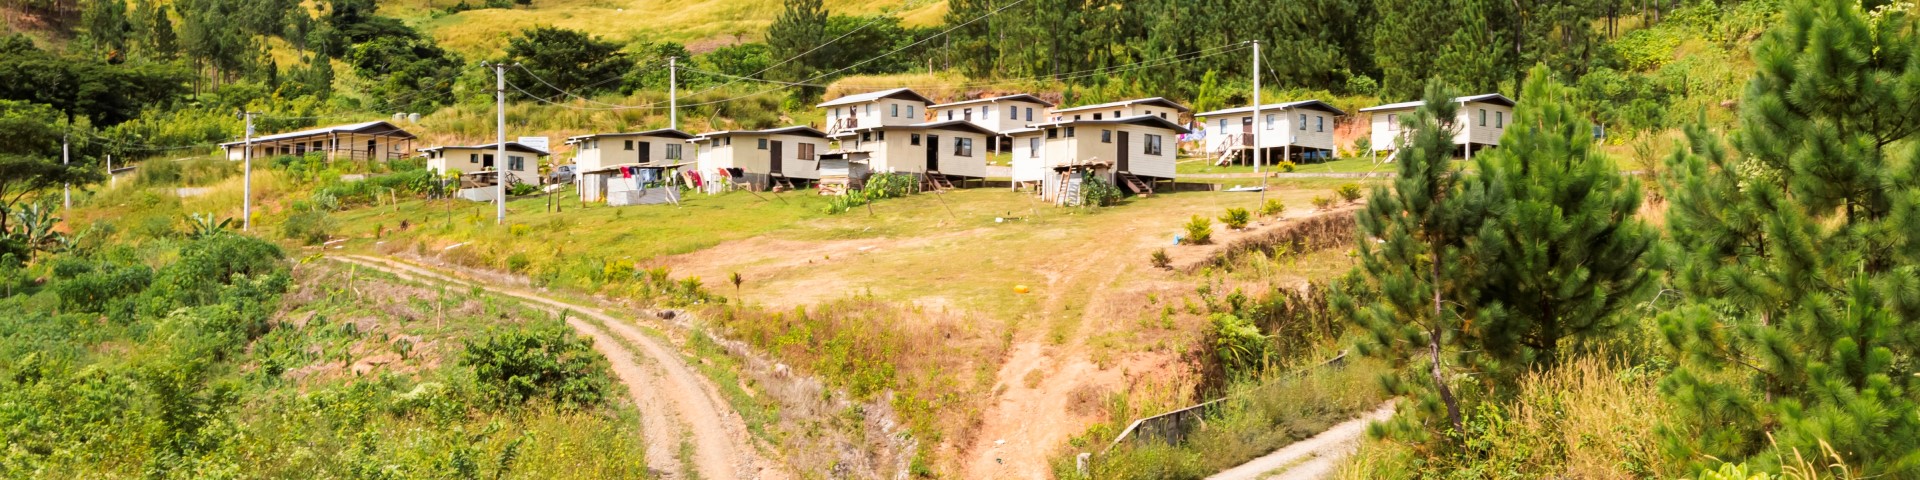 Ein Dorf, bestehend aus einer kleinen Häusergruppe, wurde umgesiedelt und steht nun an einem Berghang.